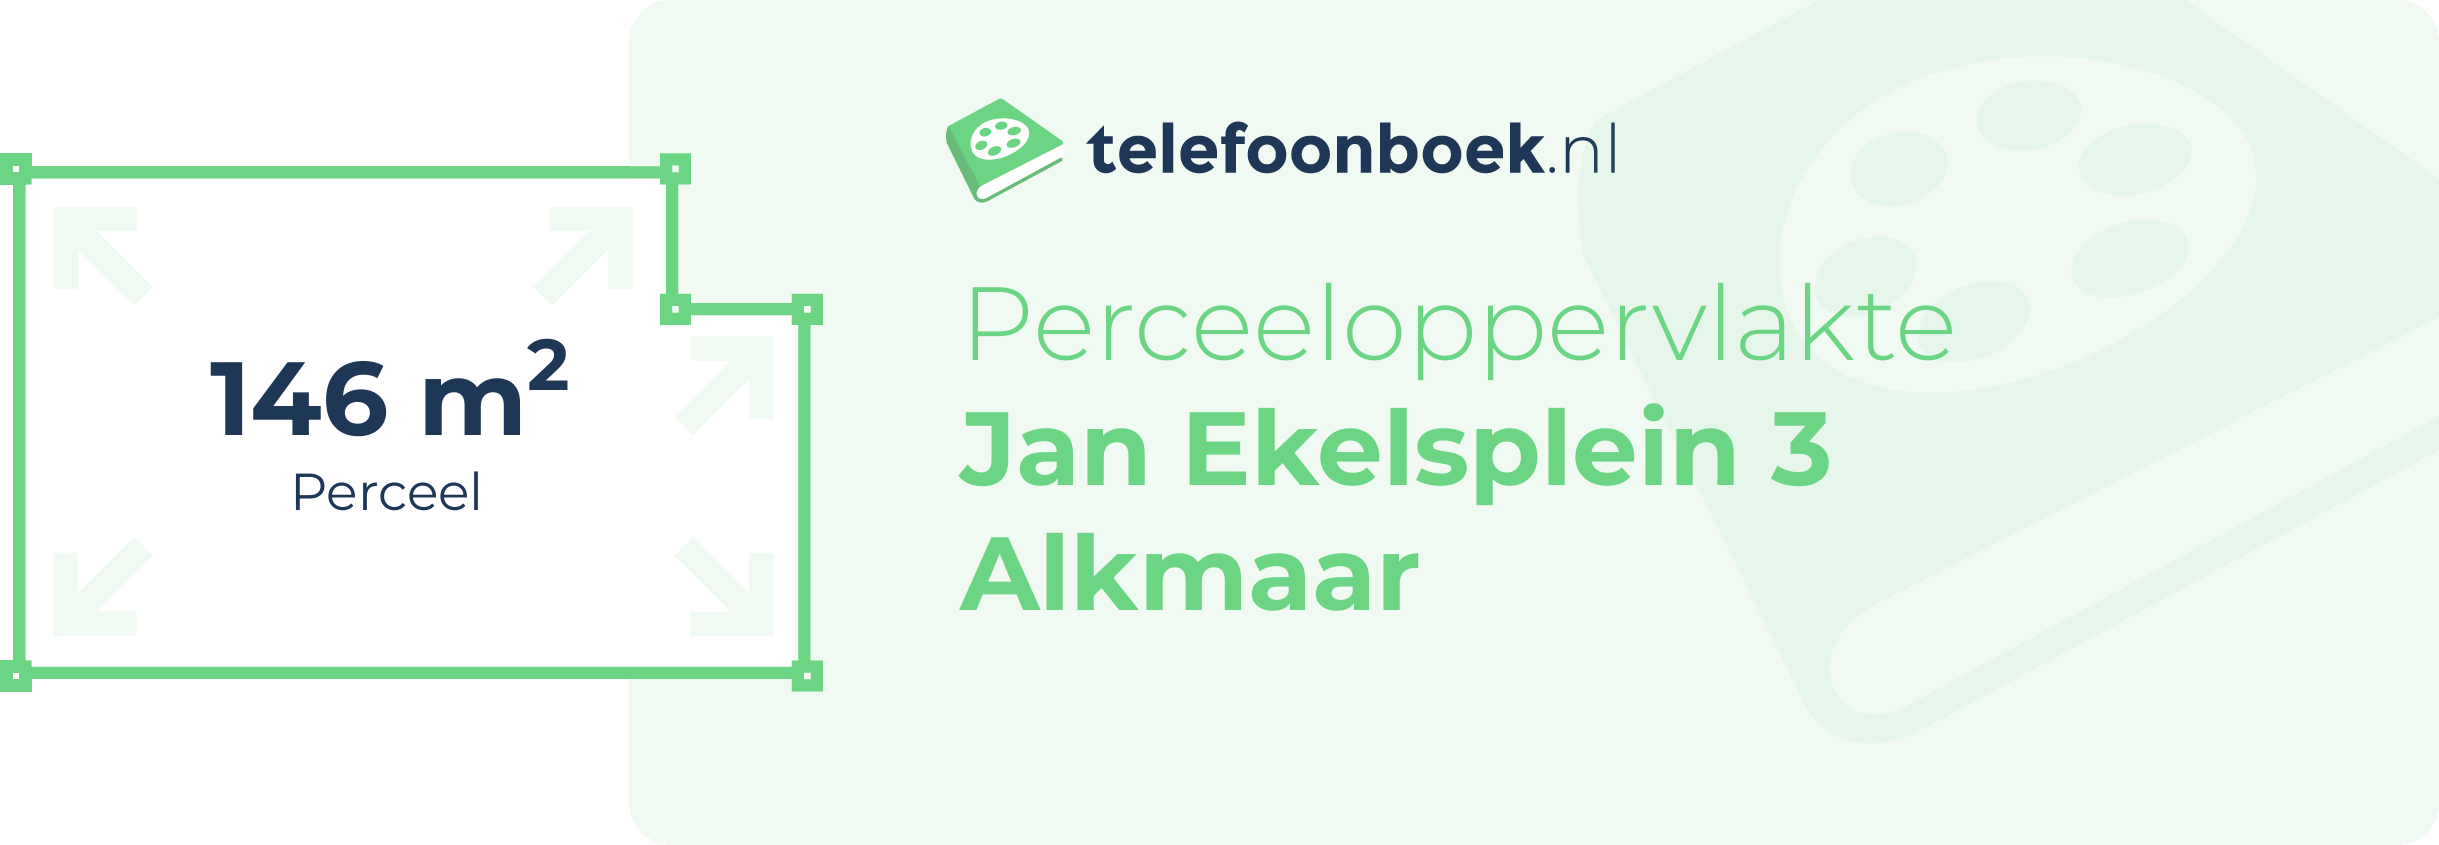 Perceeloppervlakte Jan Ekelsplein 3 Alkmaar